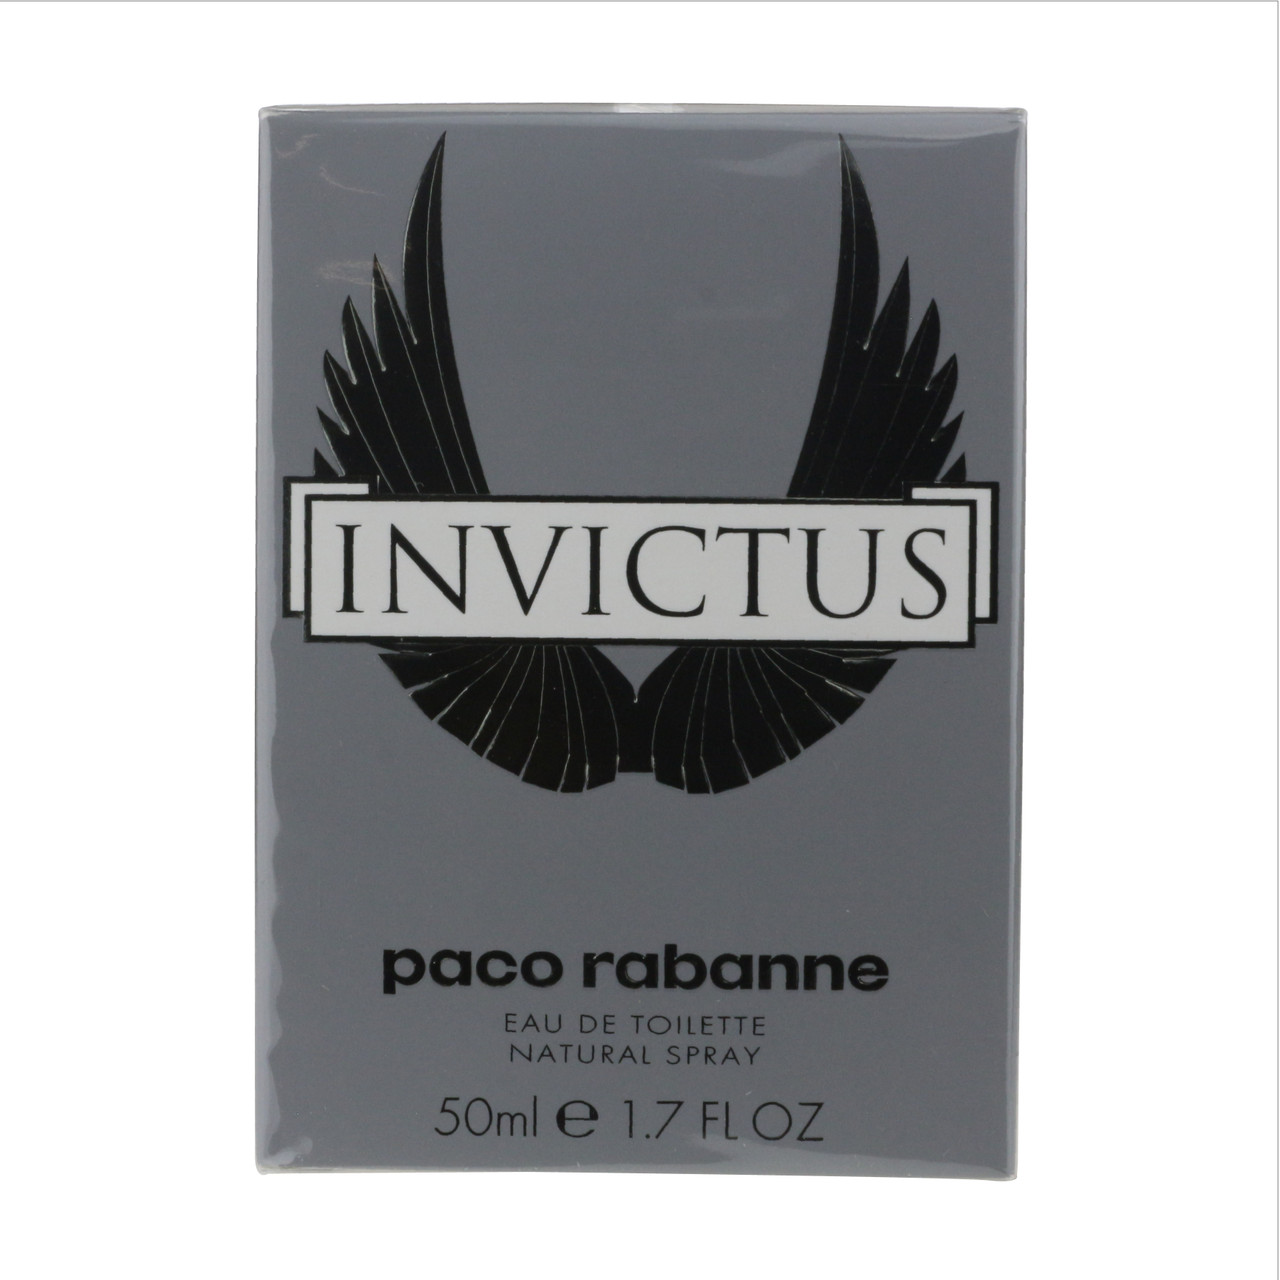 Paco Rabanne Invictus New De Toilette Eau Box 1.7oz/50ml In